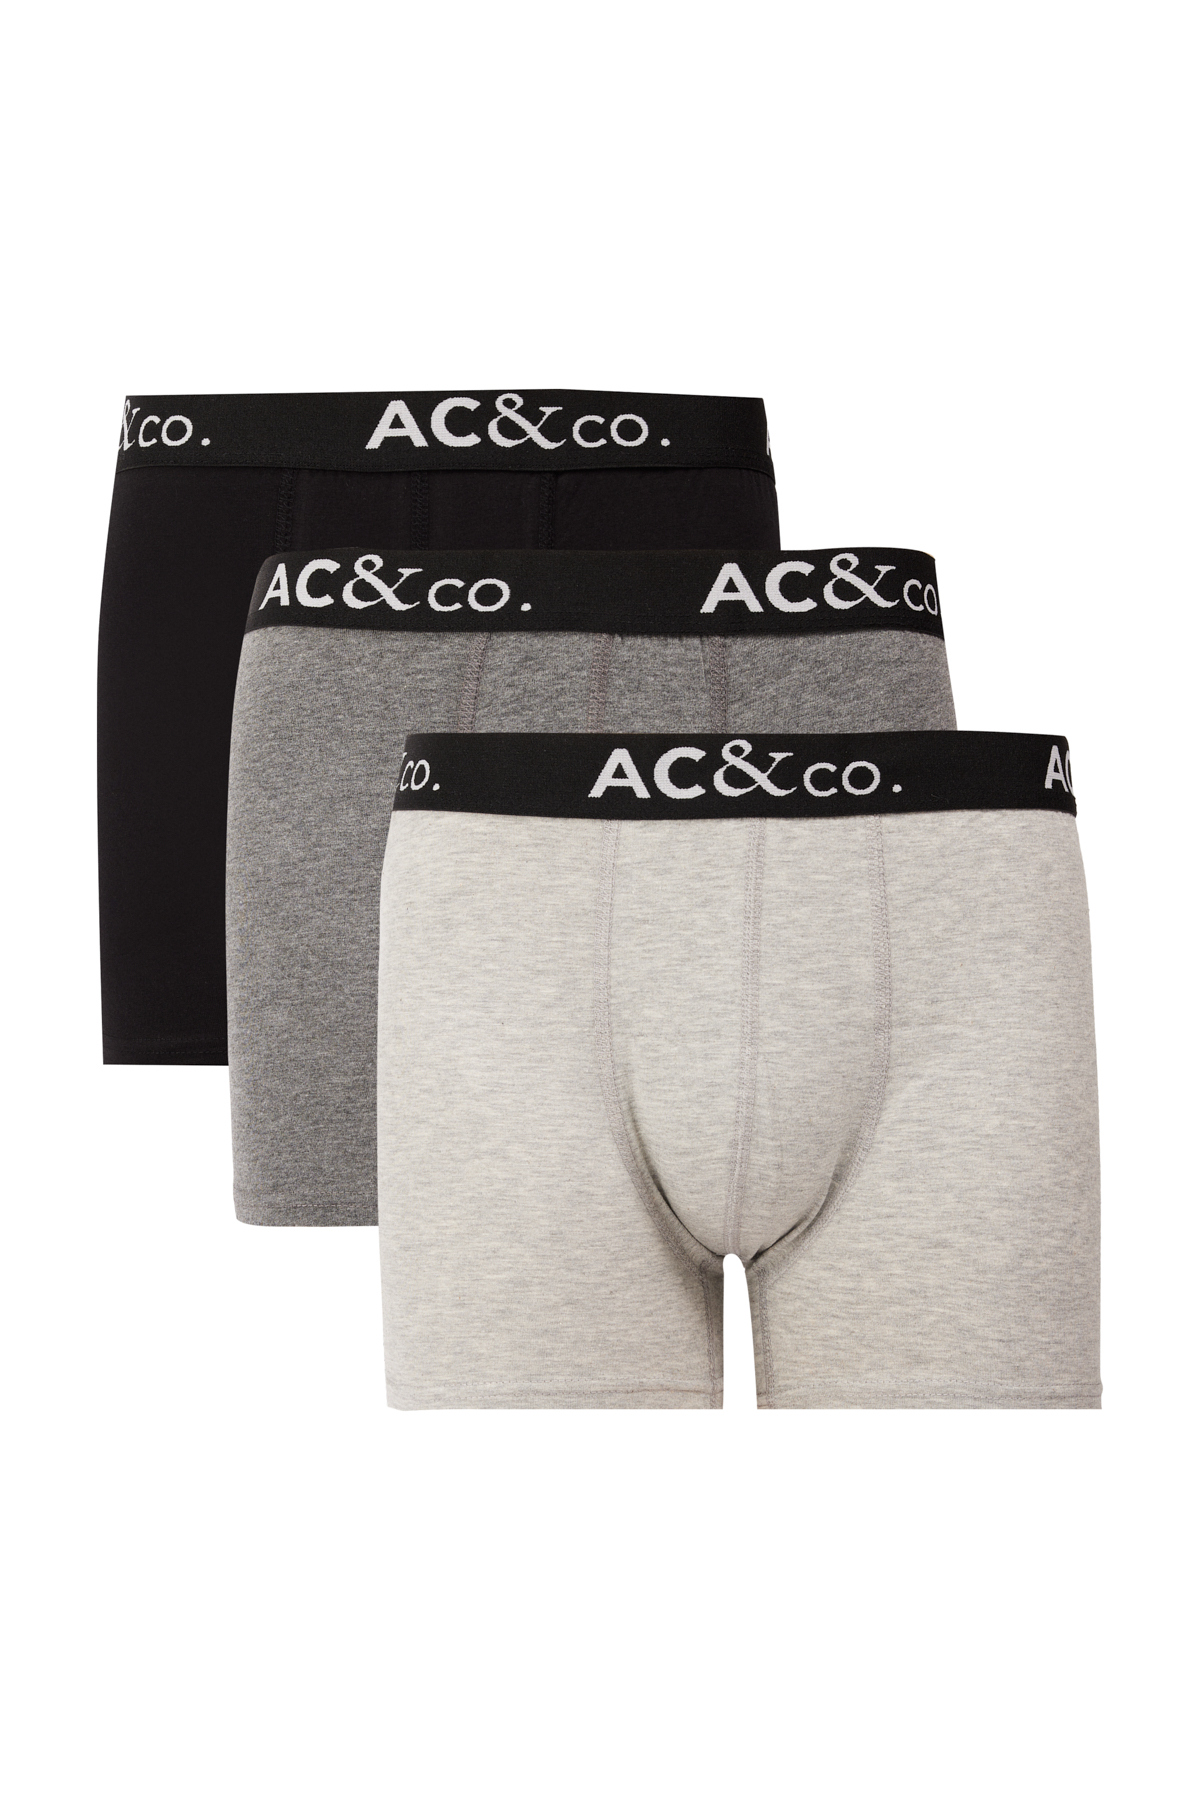 AC&Co / Altınyıldız Classics Men's Black-Anthracite Cotton Flexible 3-Pack Boxer